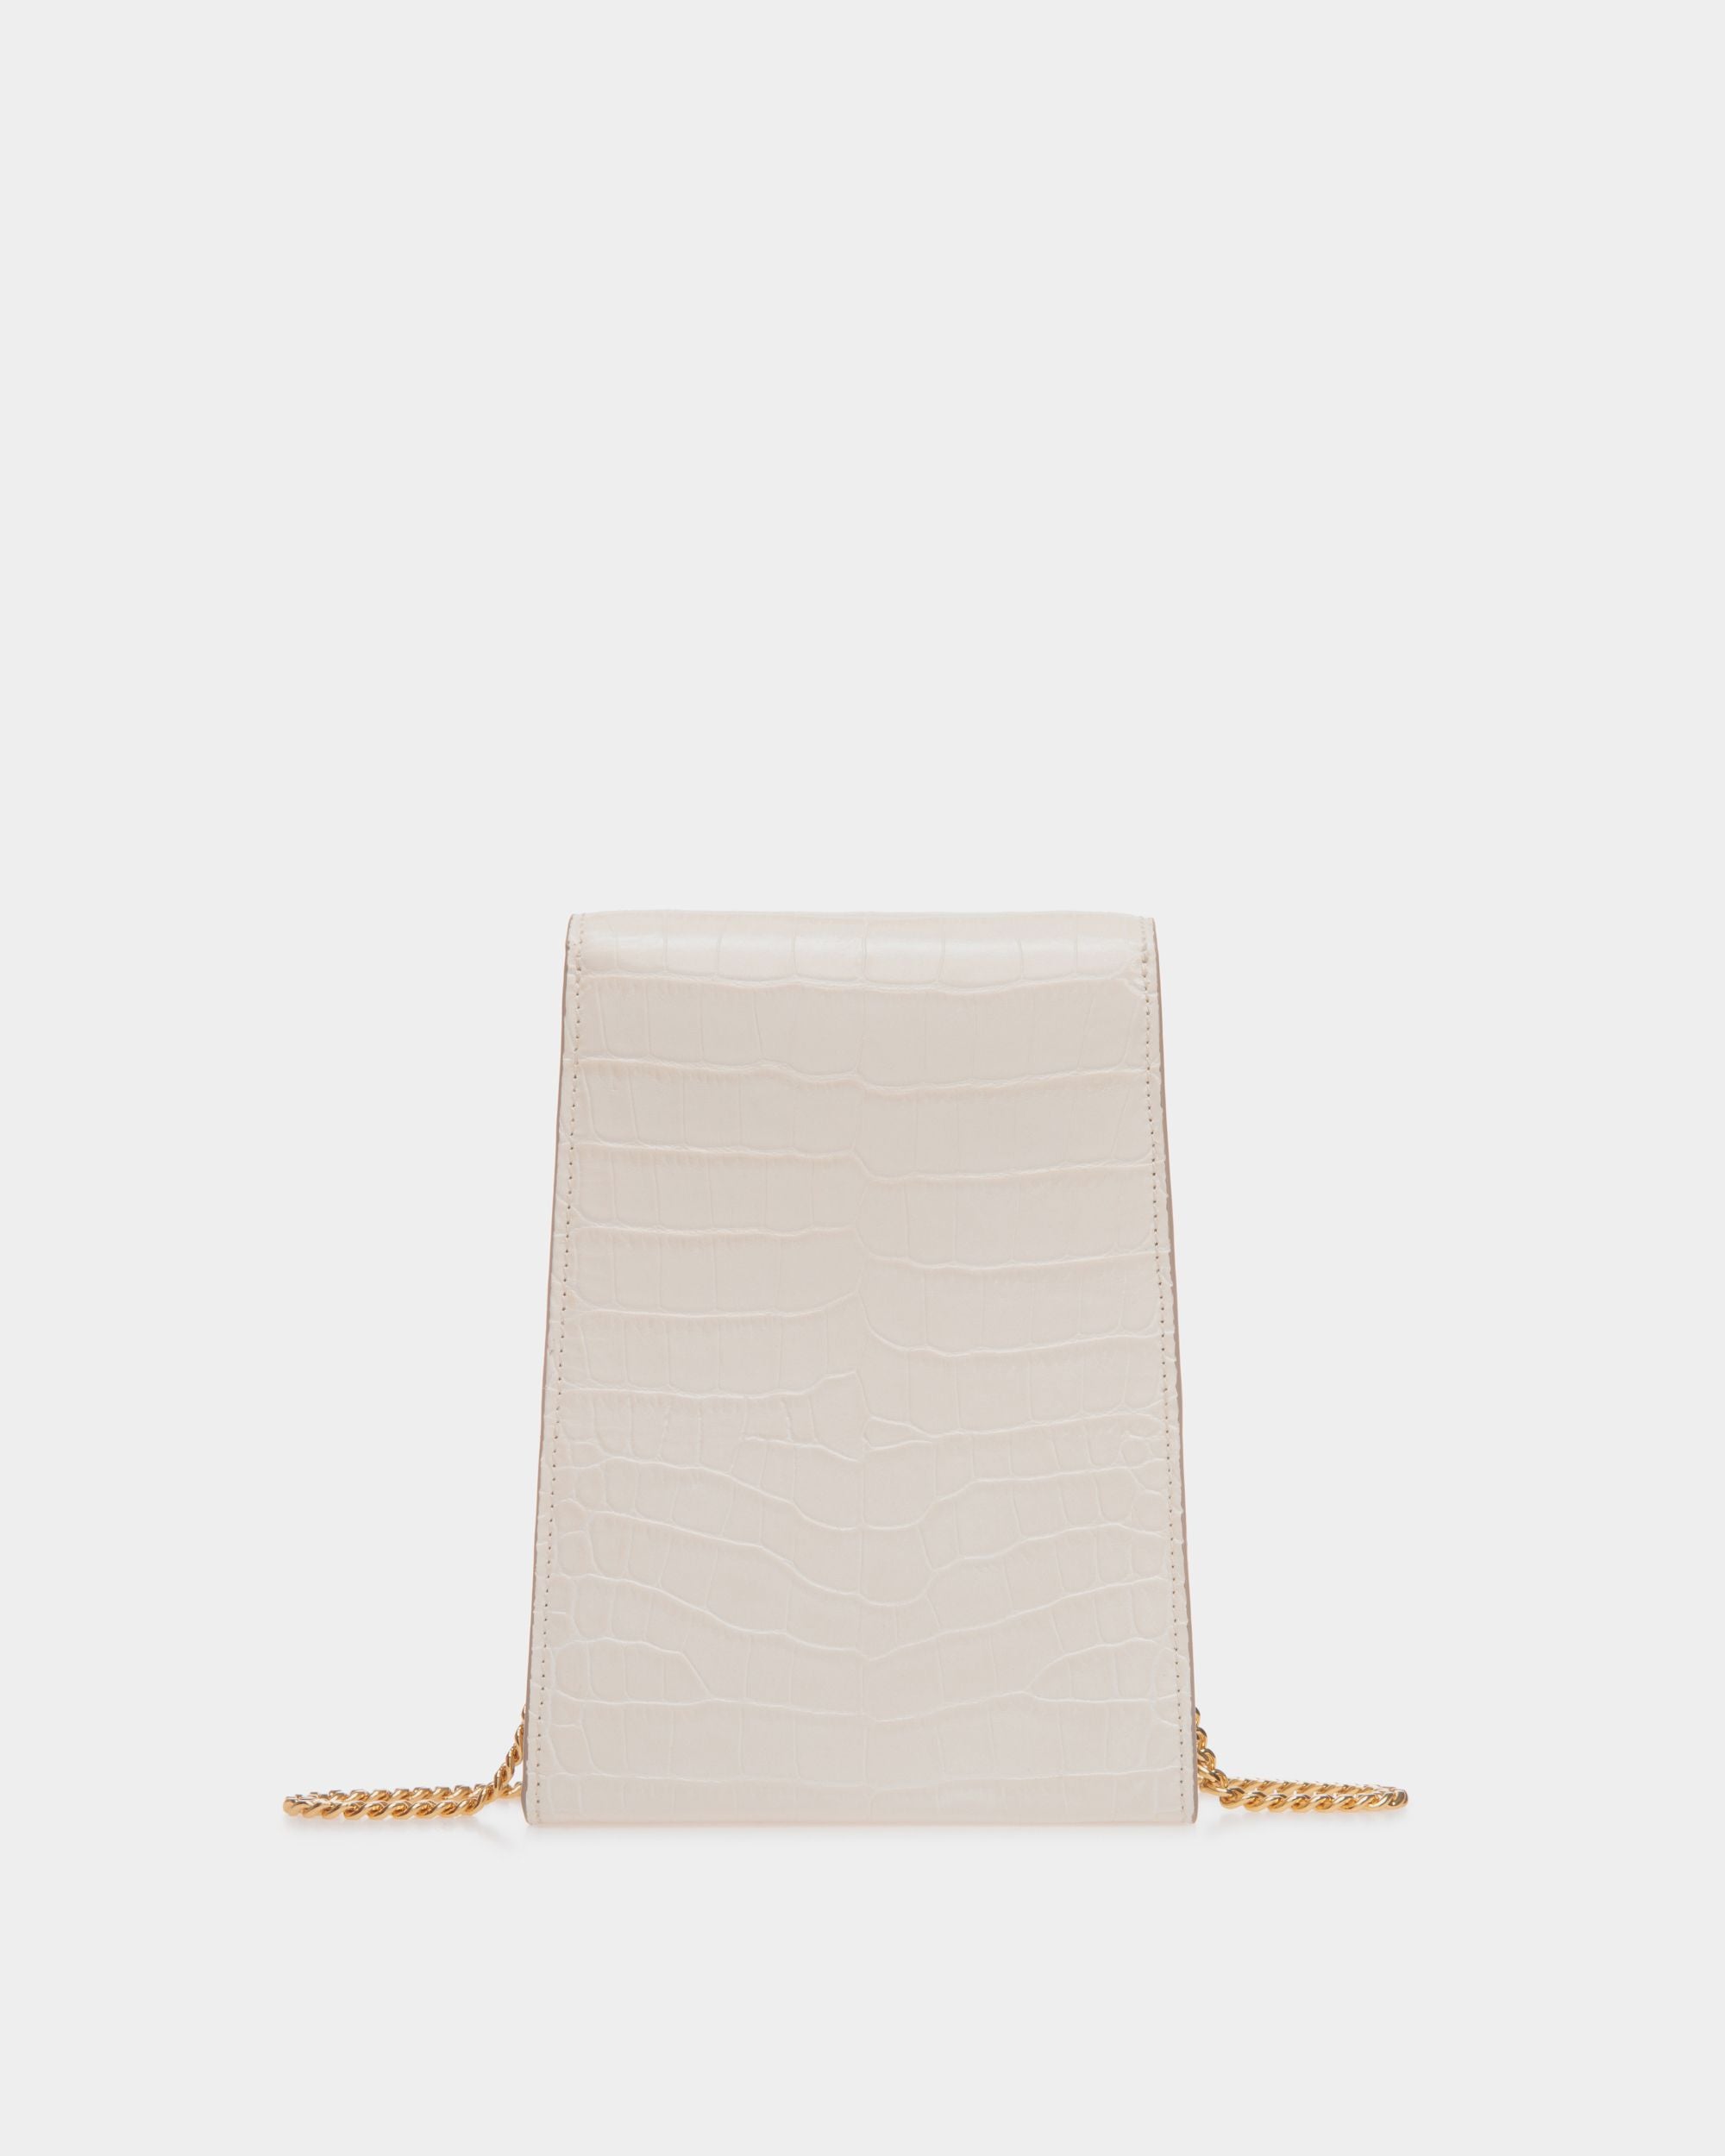 Tilt | Women's Phone Bag in White Crocodile Print Leather | Bally | Still Life Back